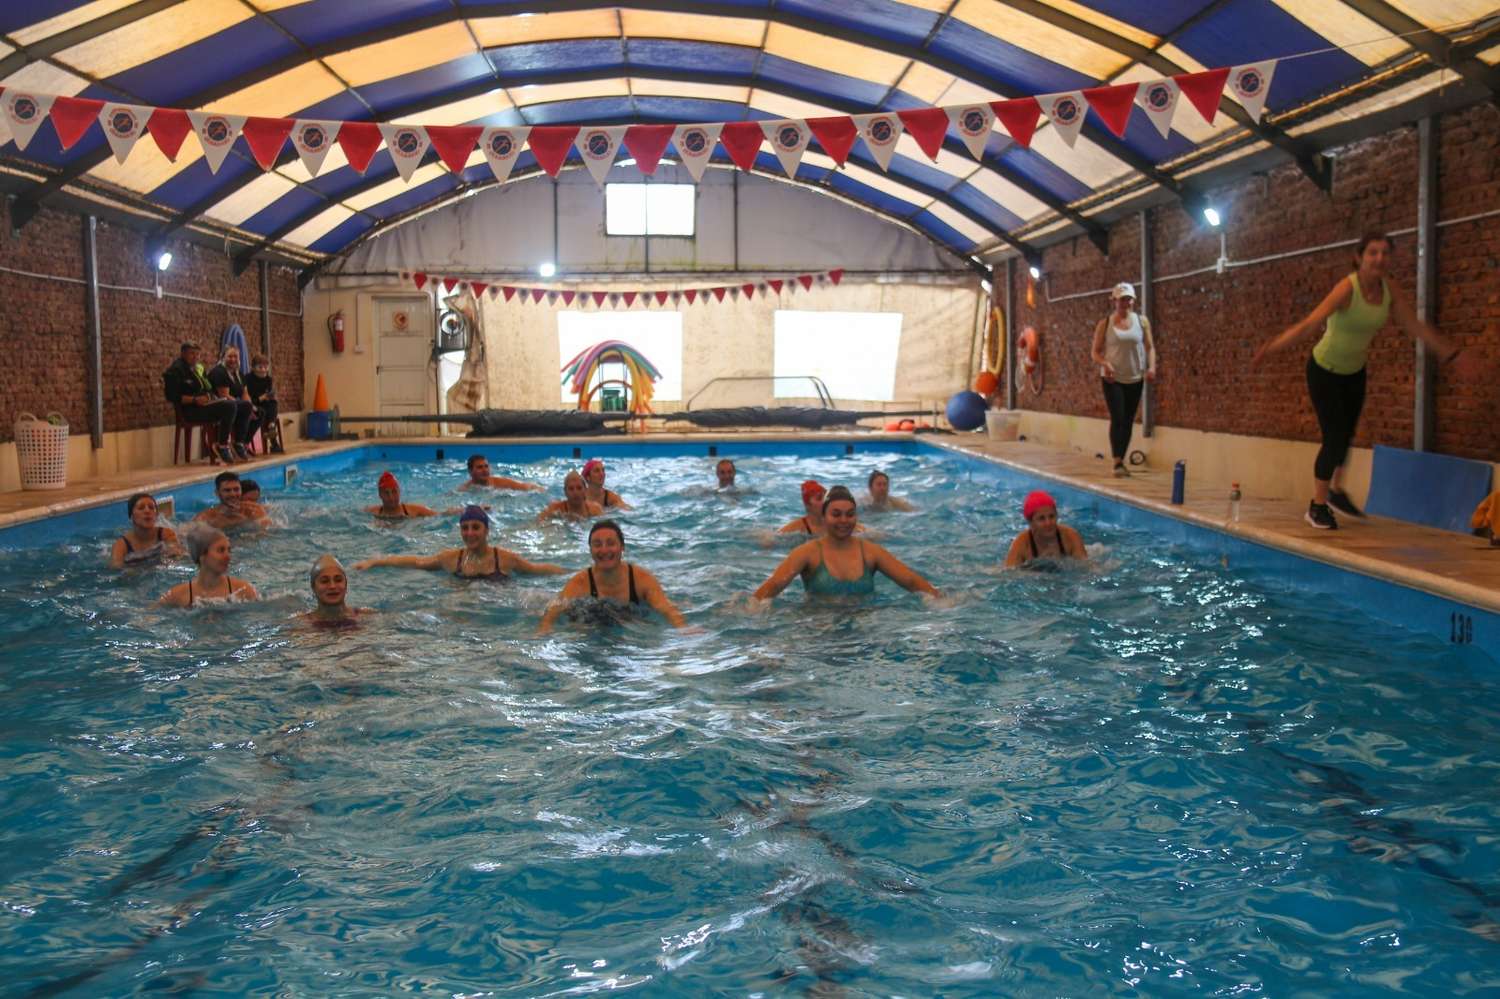 Entretenidos ejercicios físicos dentro de la piscina.